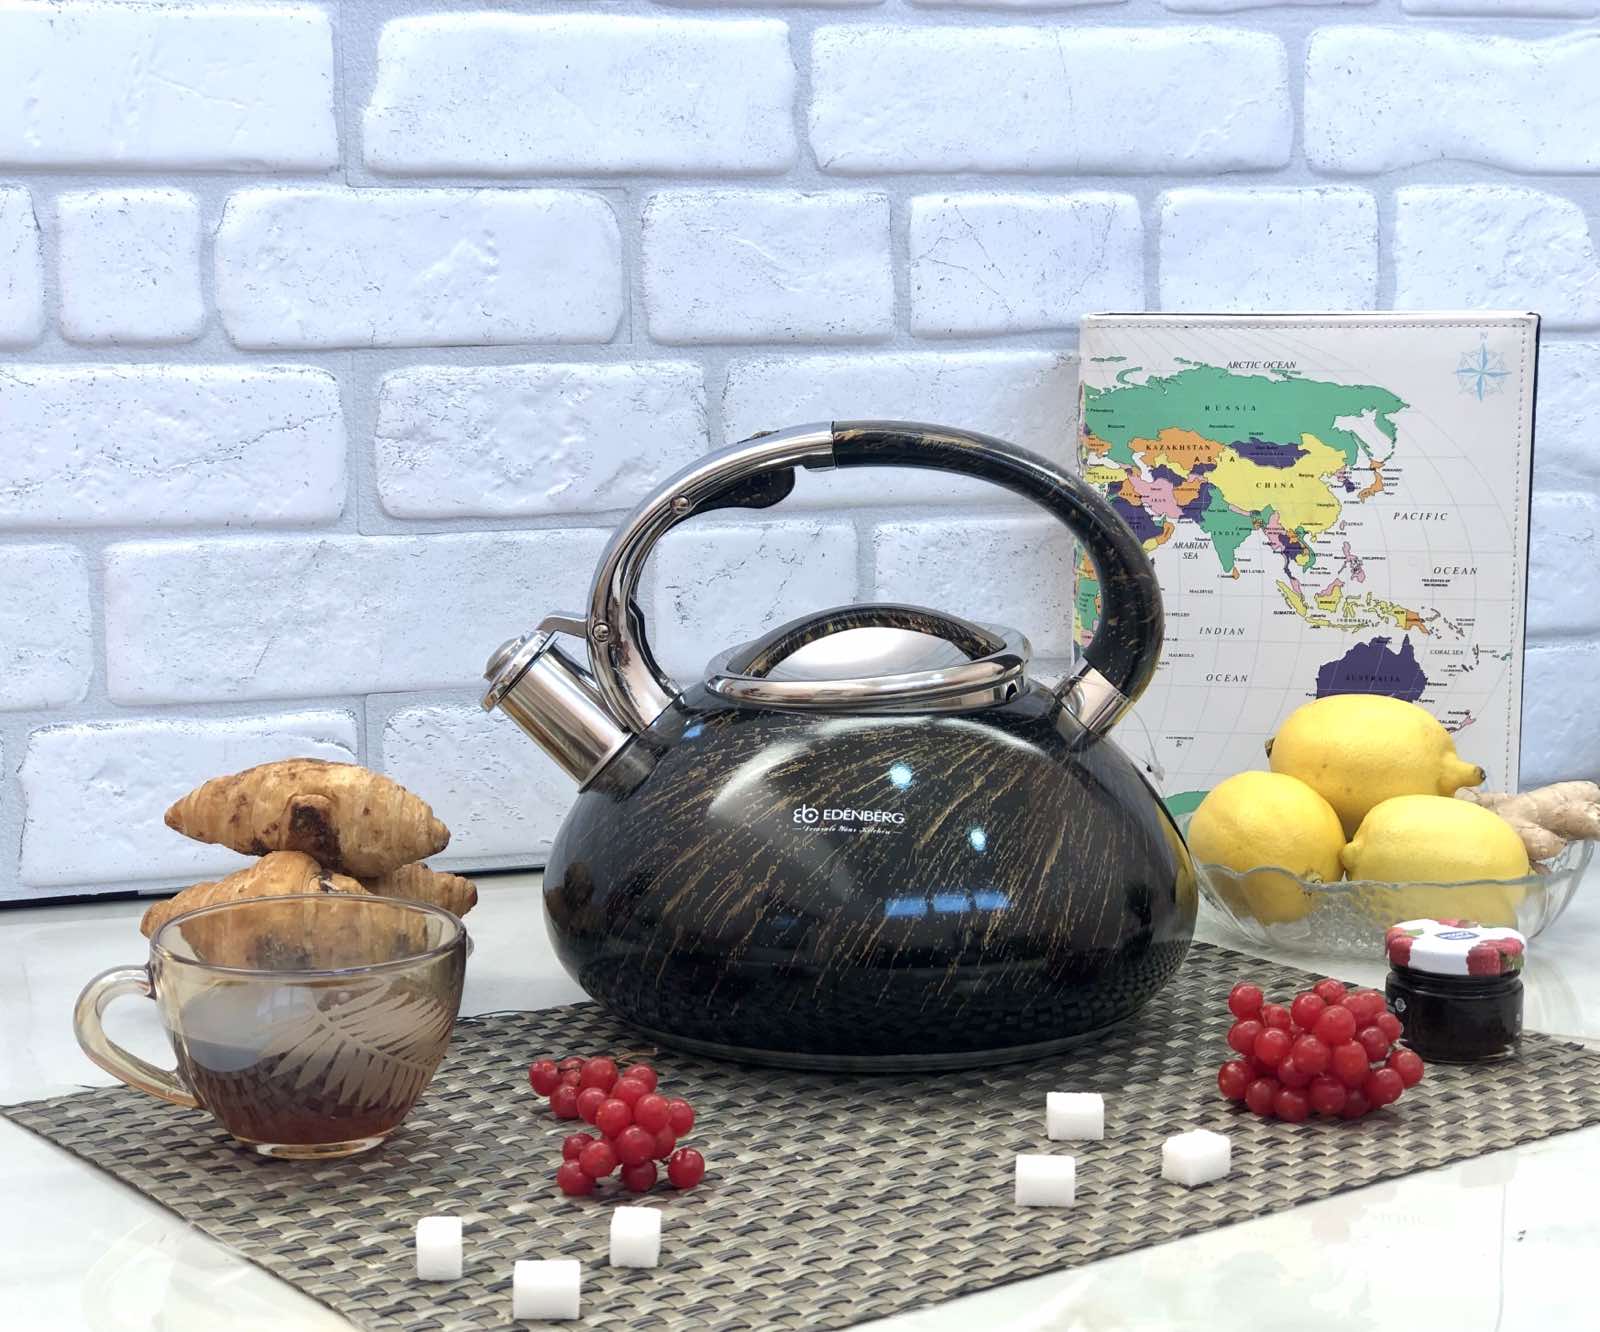 Чайник со свистком Edenberg EB - 1900 ✅ базовая цена $21.98 ✔ Опт ✔ Скидки ✔ Заходите! - Интернет-магазин ✅ Фортуна-опт ✅